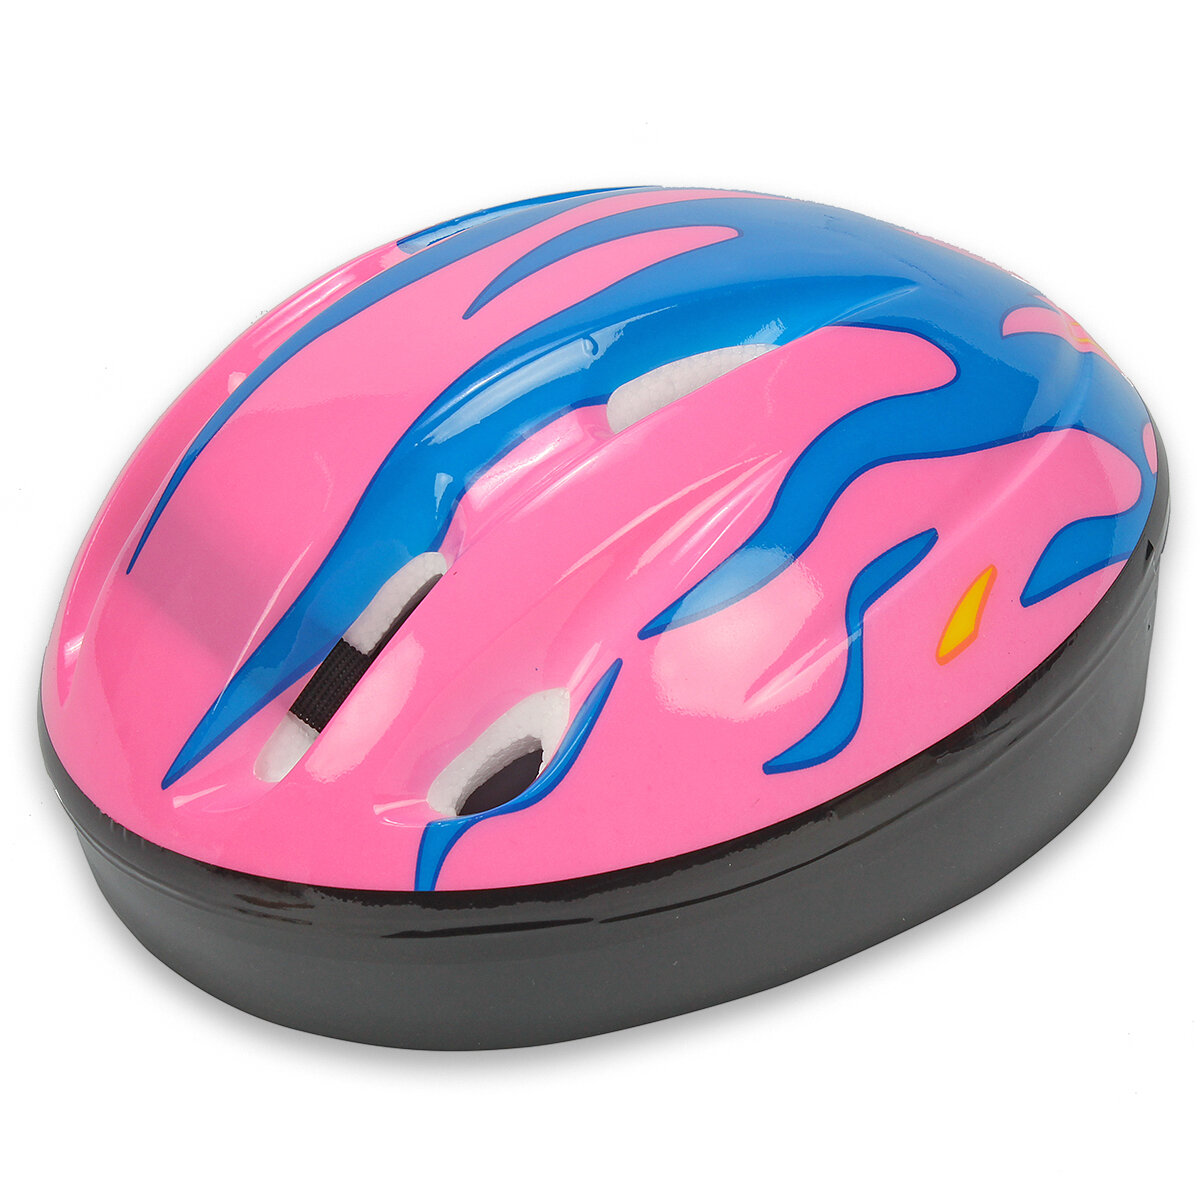 Шлем детский защитный для катания на велосипеде, самокате, роликах, скейтборде, обхват 52-54 см, размер М, 25х20х14 см, розовый – 1 шт